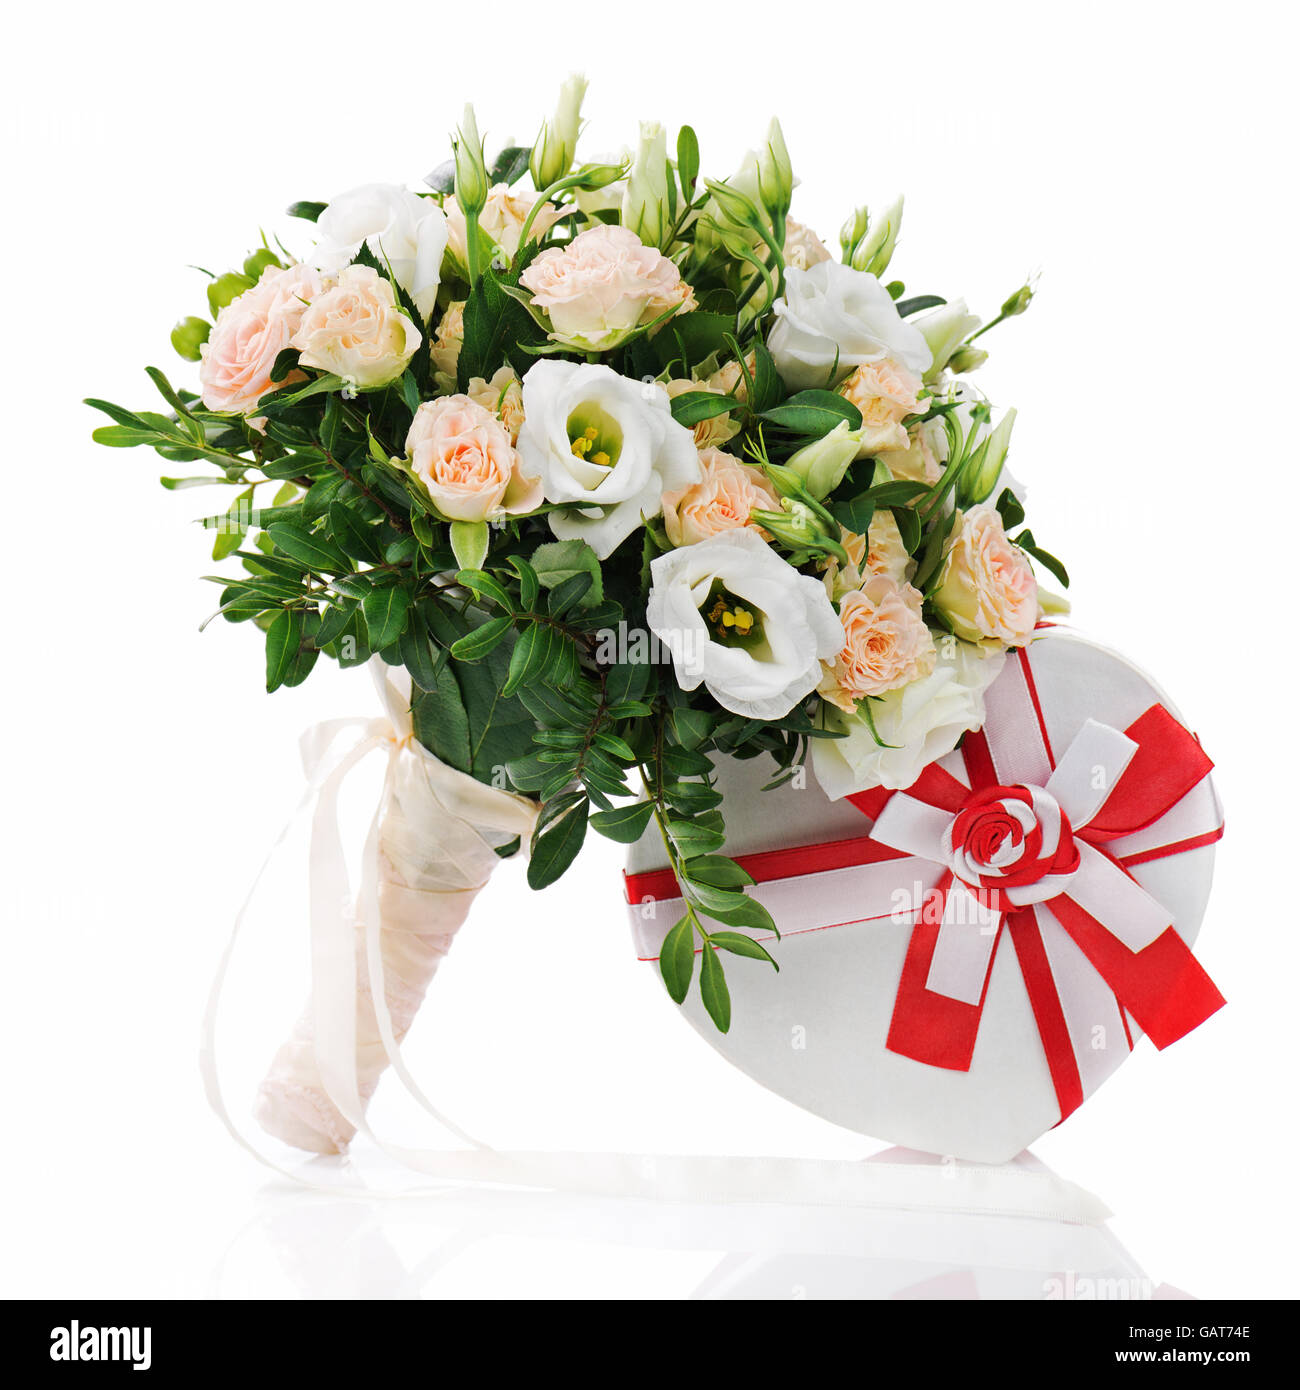 Blumenstrauß für die Braut von Rosen, Eustomy und Pistazien mit einem Hochzeitsgeschenk isoliert auf weißem Hintergrund. Stockfoto